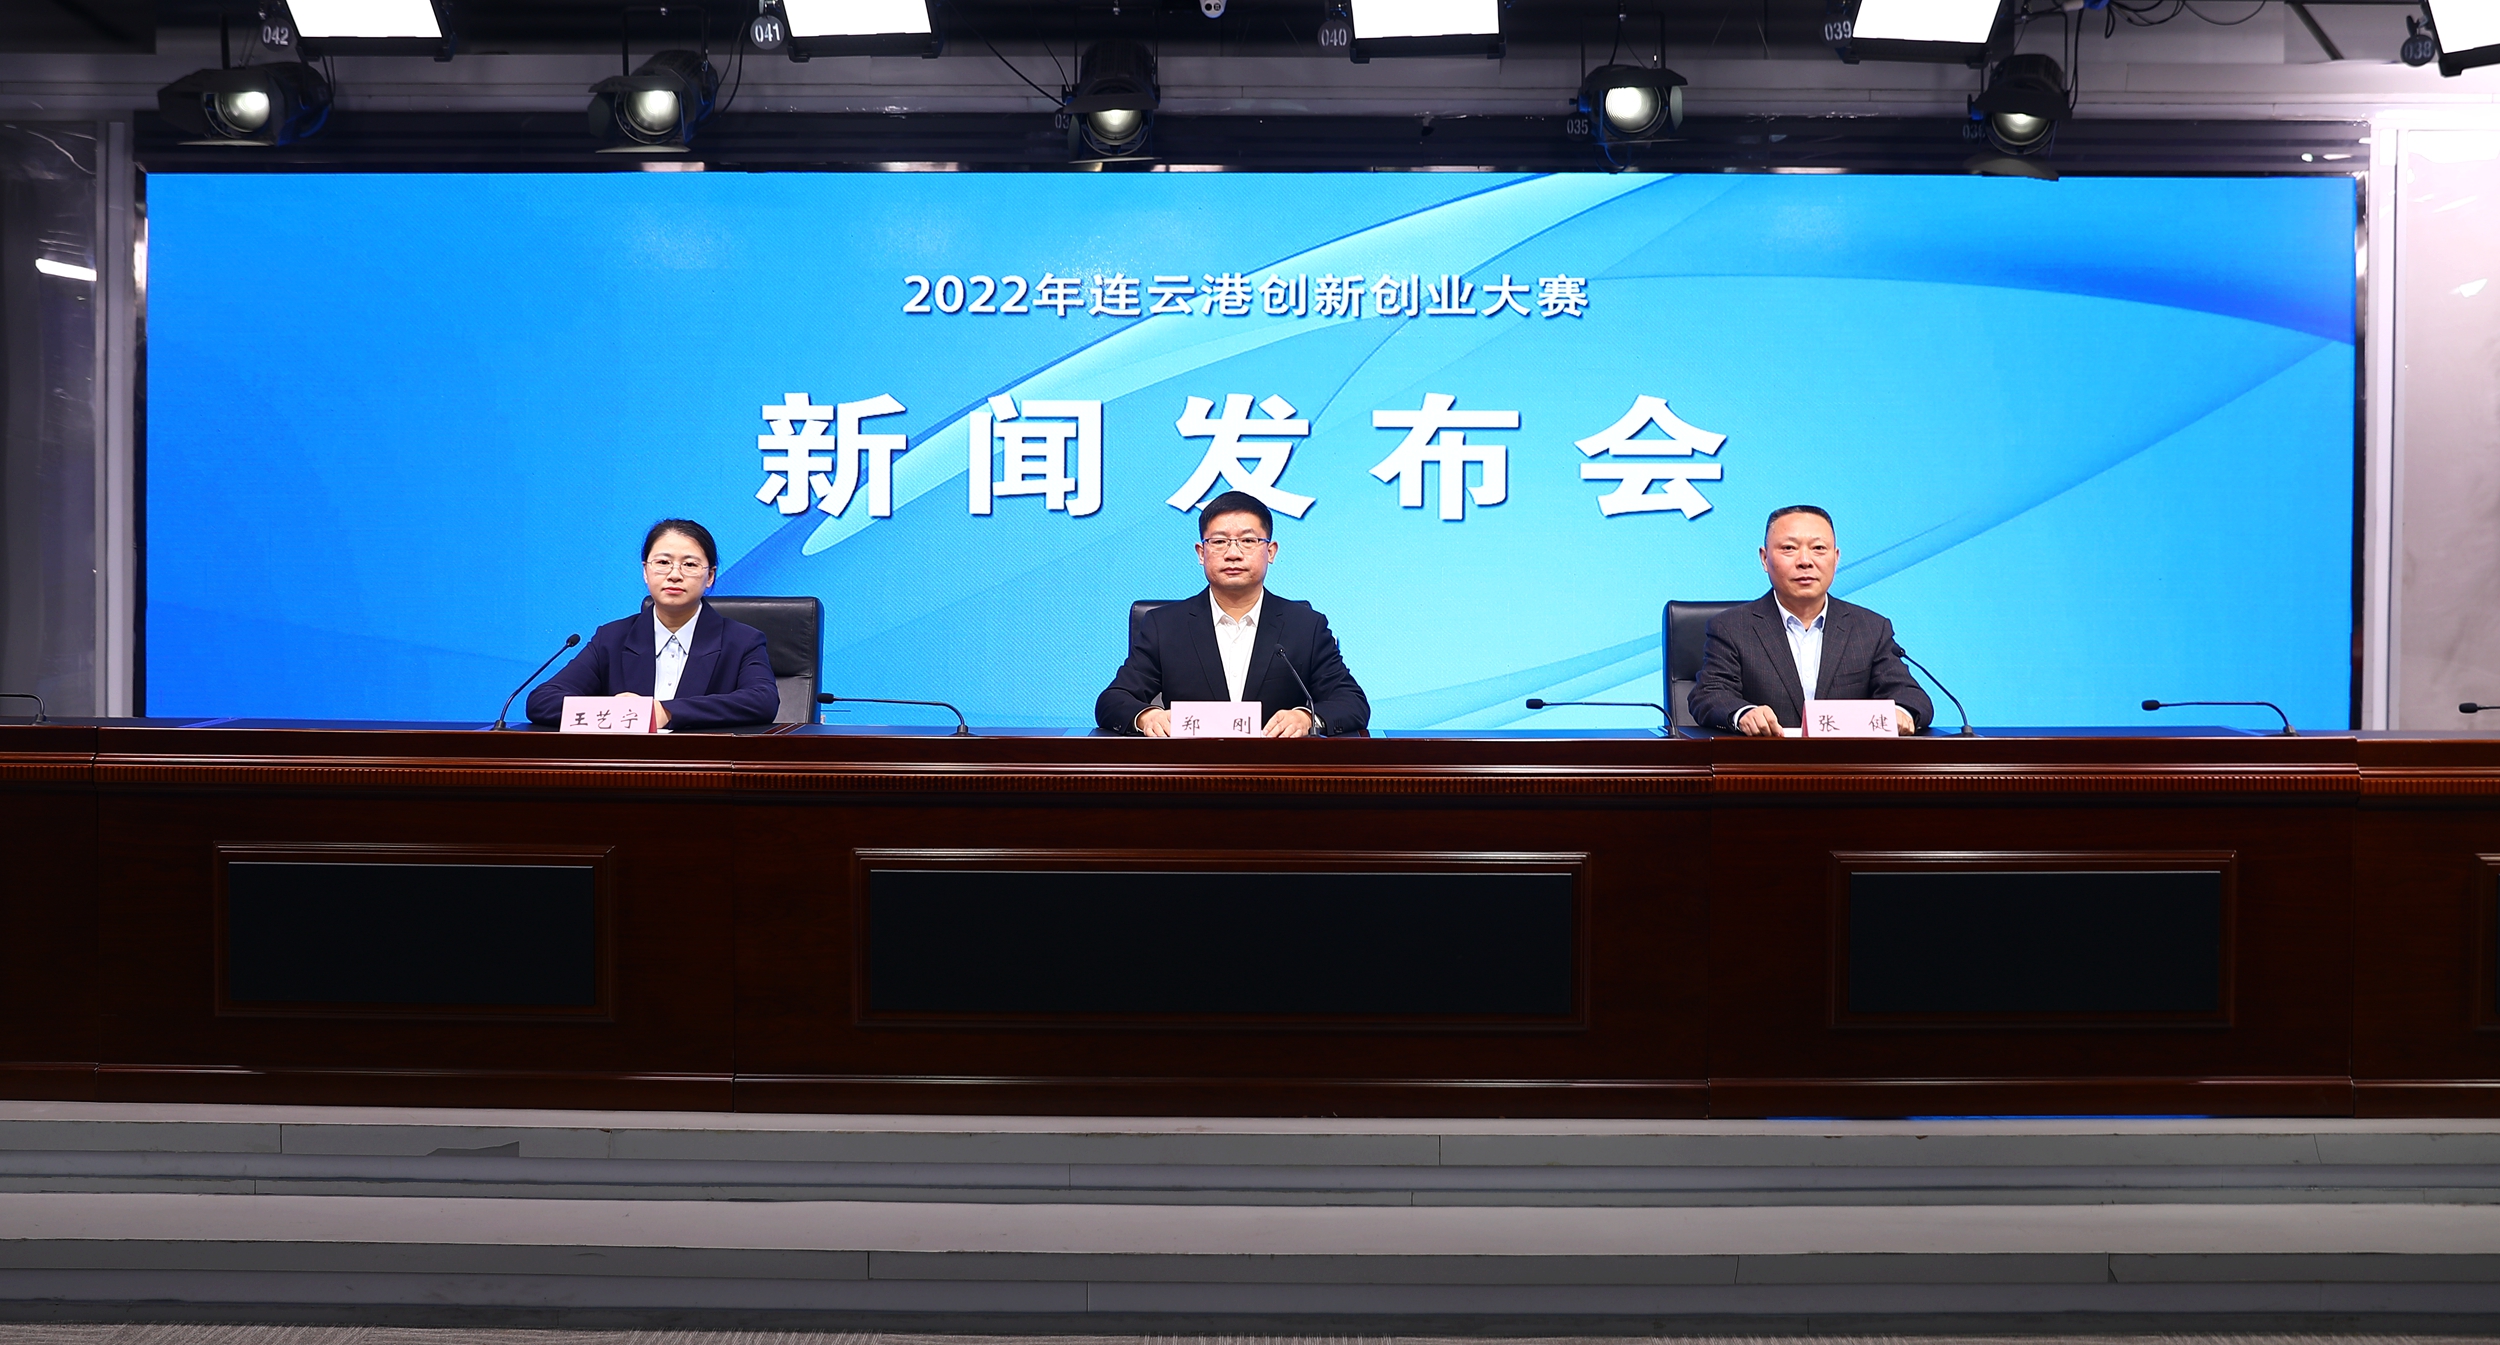 2022年连云港创新创业大赛新闻发布会